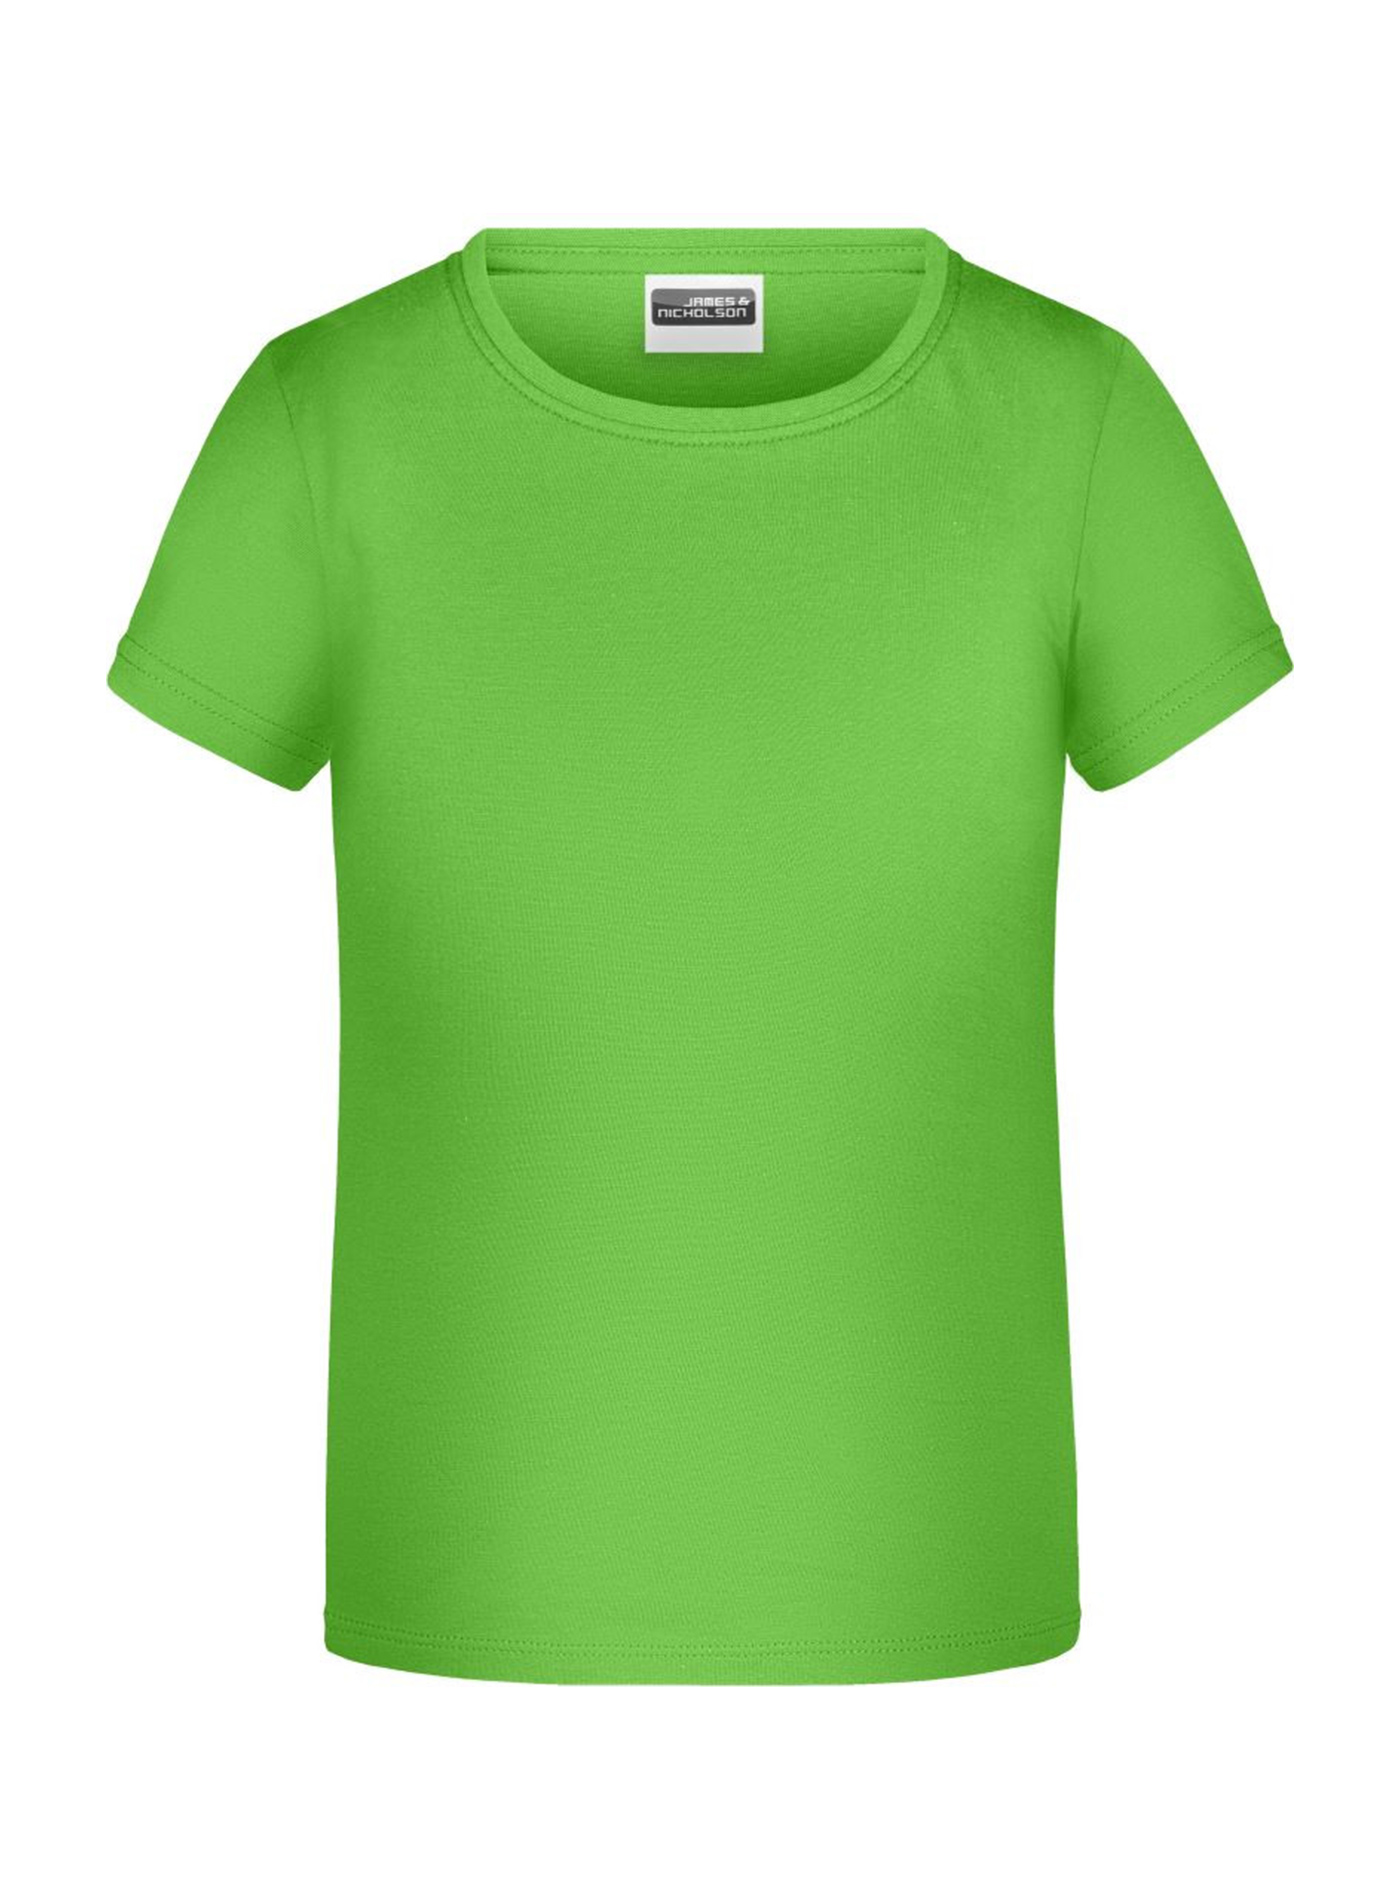 Dívčí tričko James & Nicholson - Neonová zelená XL